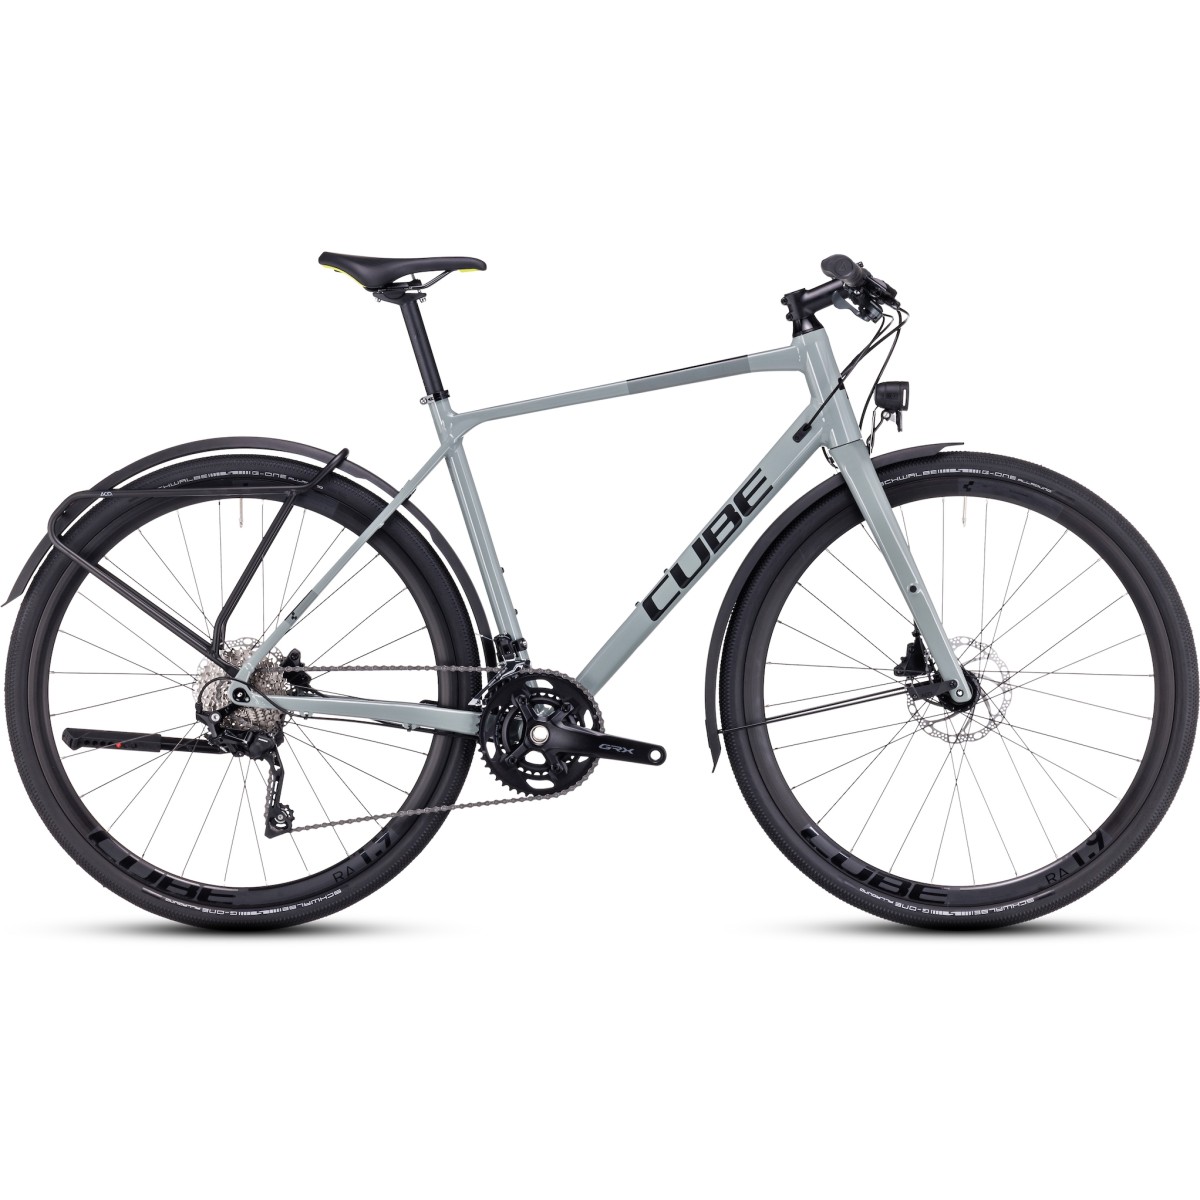 CUBE NULANE PRO FE gravel bicycle - grey/black - 2023